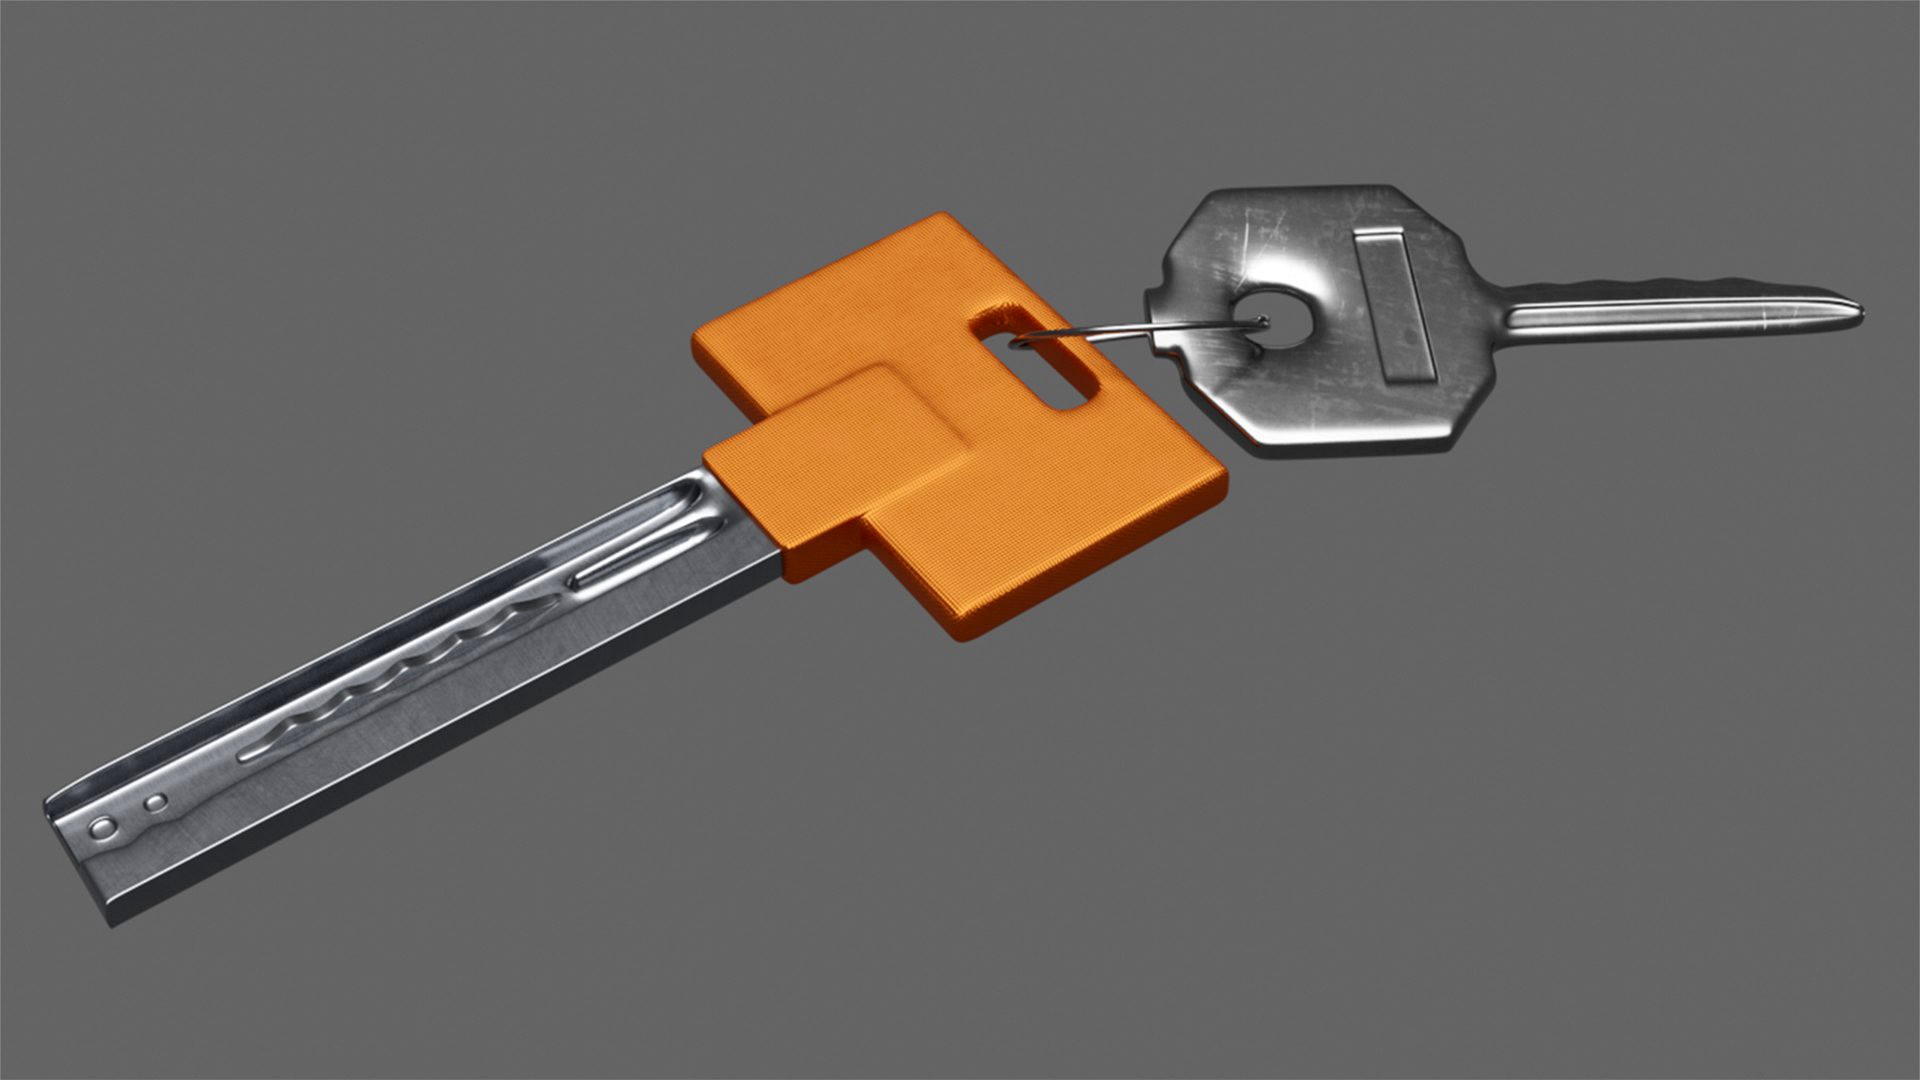 Keys With Key Chain